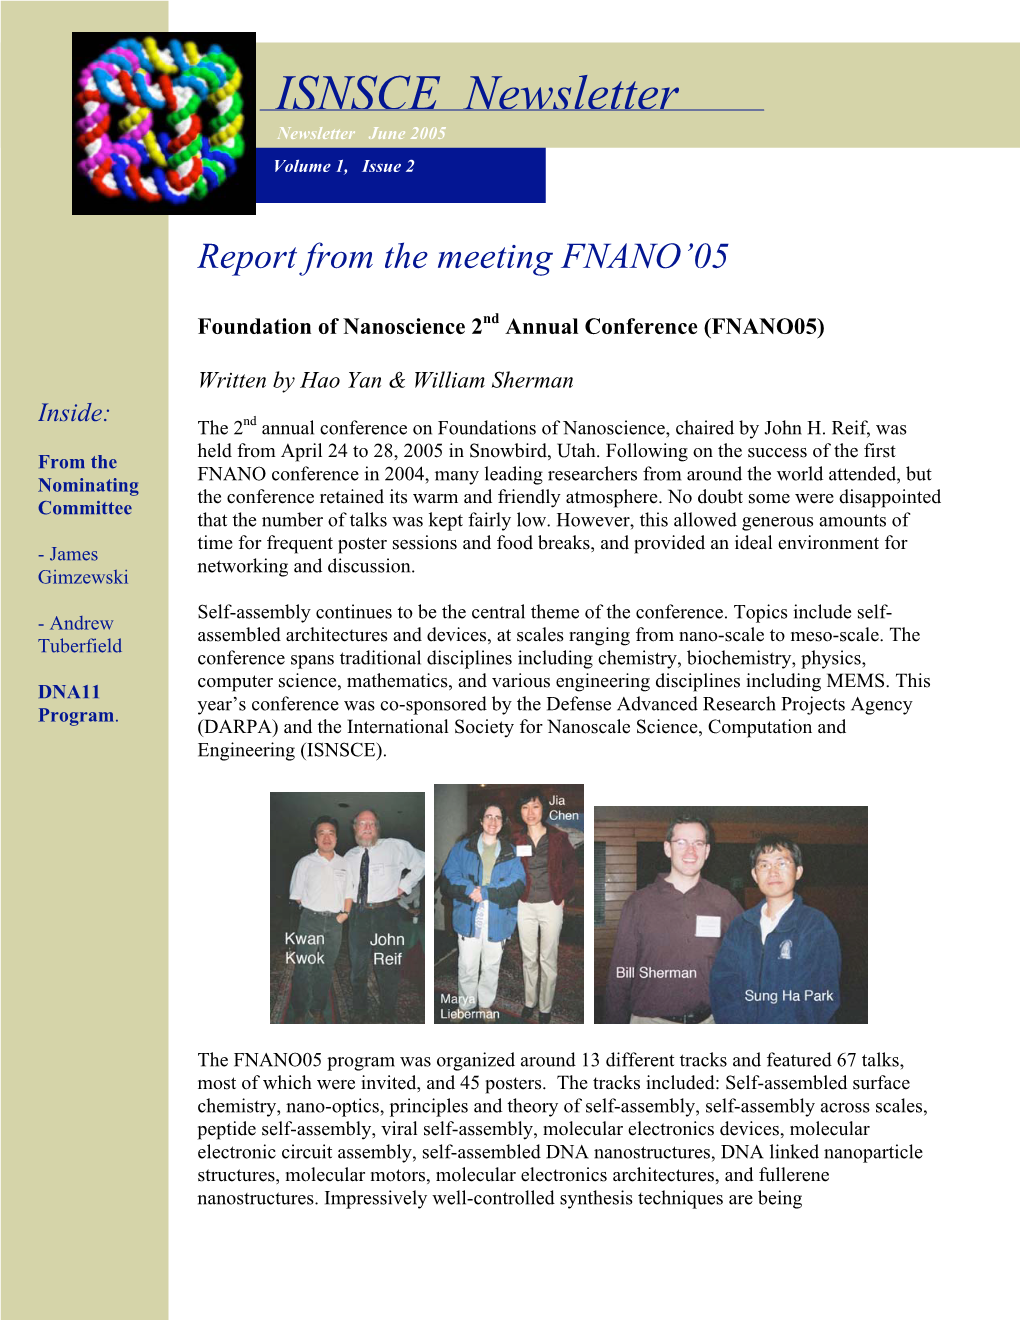 ISNSCE Newsletter Newsletter June 2005 Volume 1, Issue 2